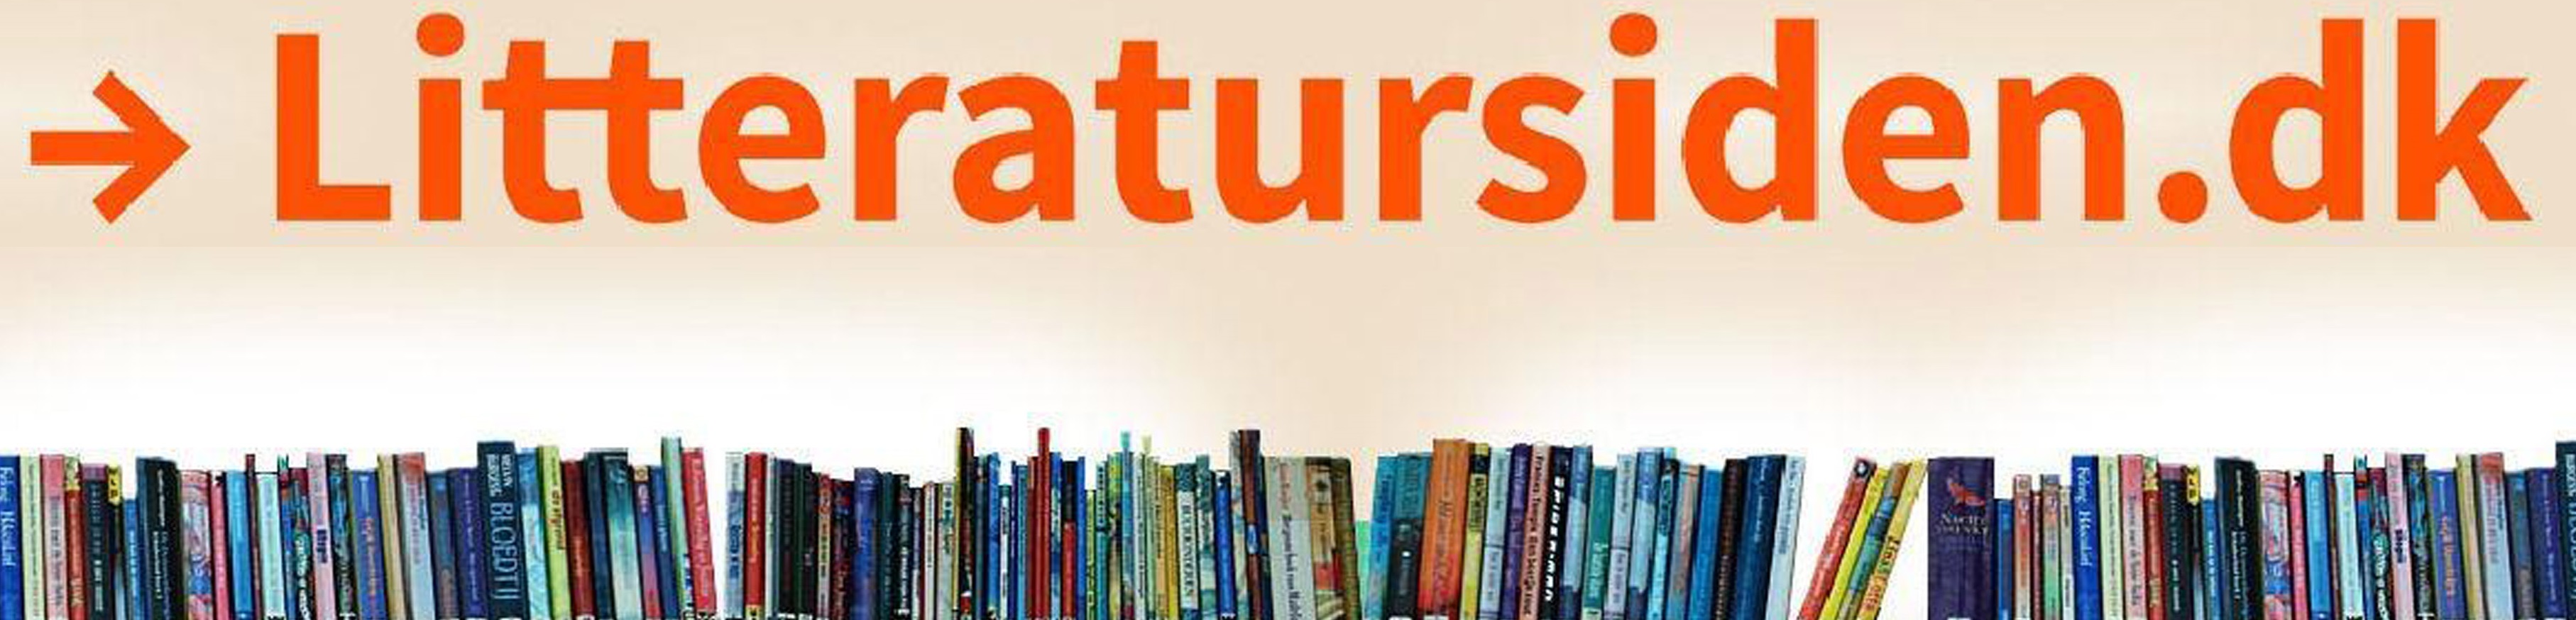 Besøg Litteratursiden - bibliotekerne fælles hjemmeside, der tilbyder anmeldelser af og information om litteratur